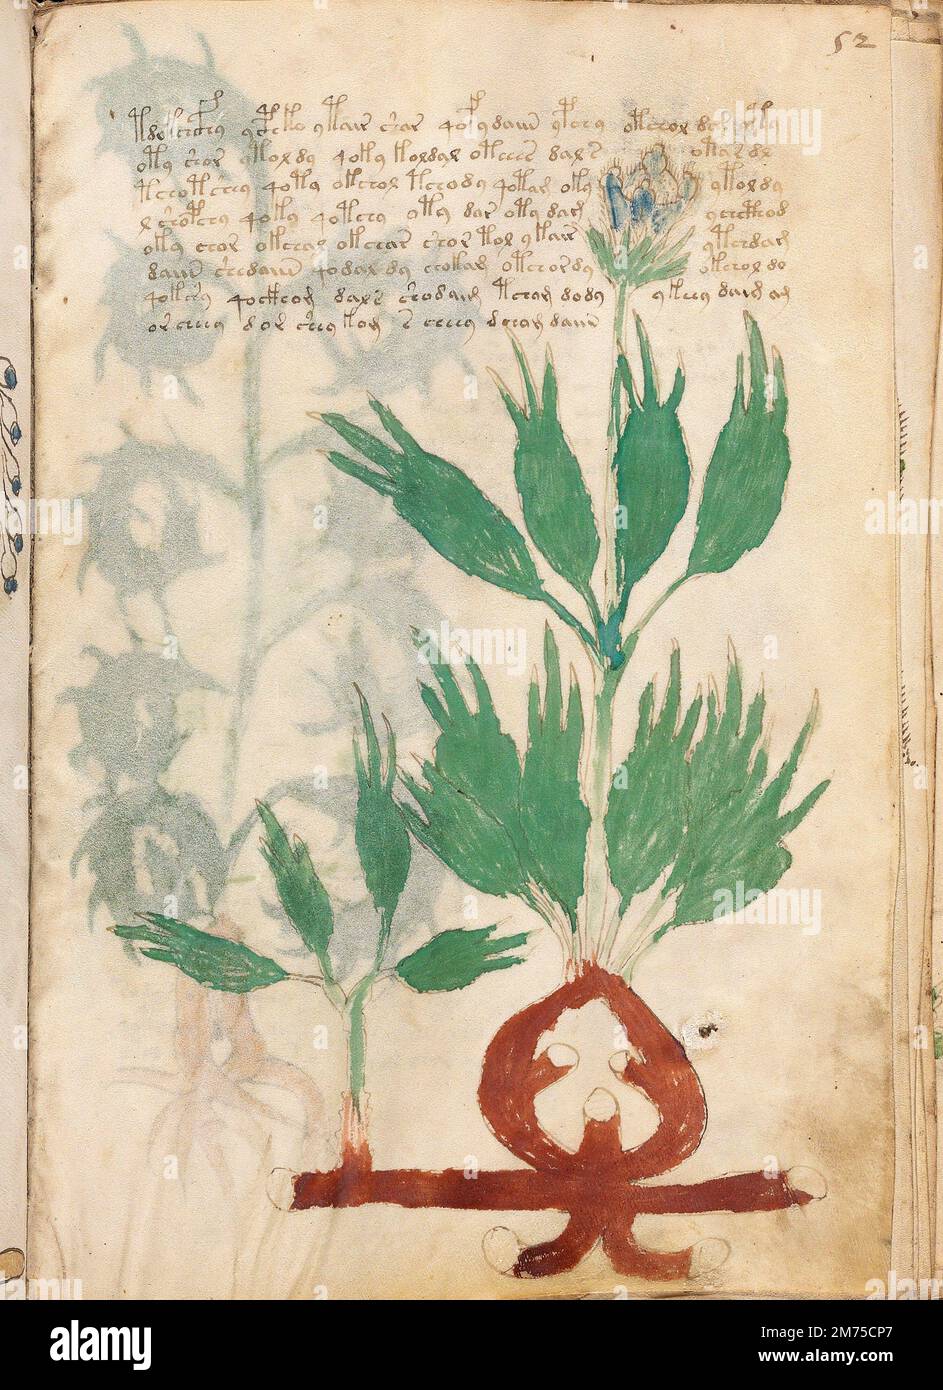 Voynich-Manuskript. Eine Beispielseite aus dem Voynich-Manuskript, ein illustrierter Kodex, handgeschrieben in einem ansonsten unbekannten Schreibsystem. Datiert auf das frühe 15. Jahrhundert. Stockfoto